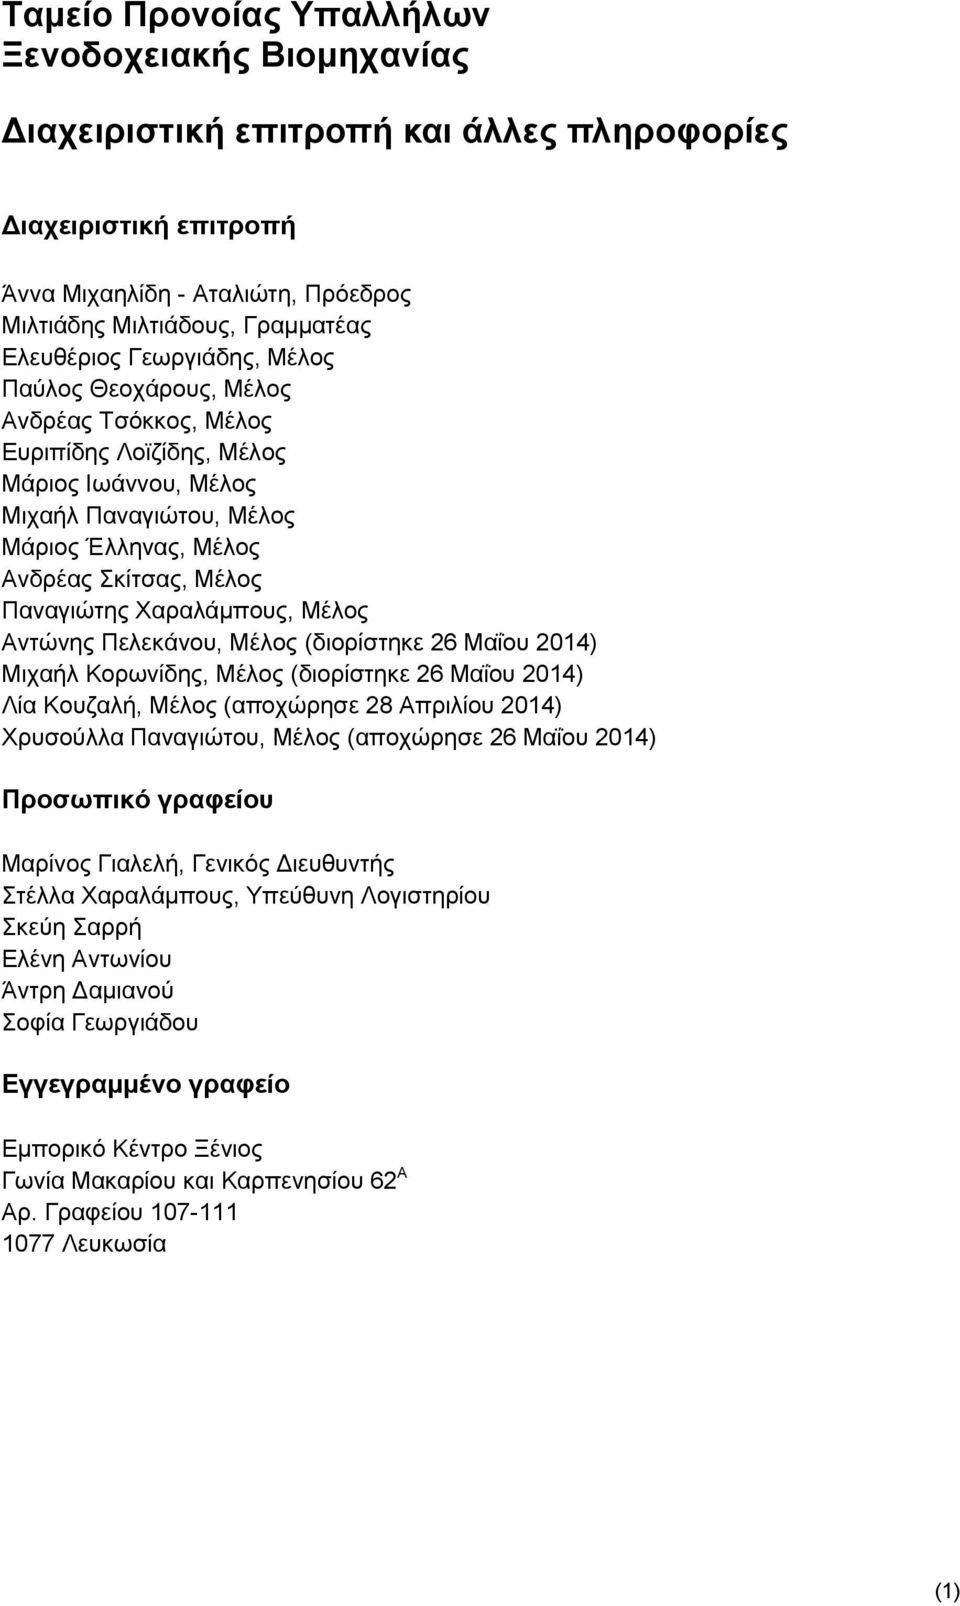 26 Μαΐου 2014) Μιχαήλ Κορωνίδης, Μέλος (διορίστηκε 26 Μαΐου 2014) Λία Κουζαλή, Μέλος (αποχώρησε 28 Απριλίου 2014) Χρυσούλλα Παναγιώτου, Μέλος (αποχώρησε 26 Μαΐου 2014) Προσωπικό γραφείου Μαρίνος